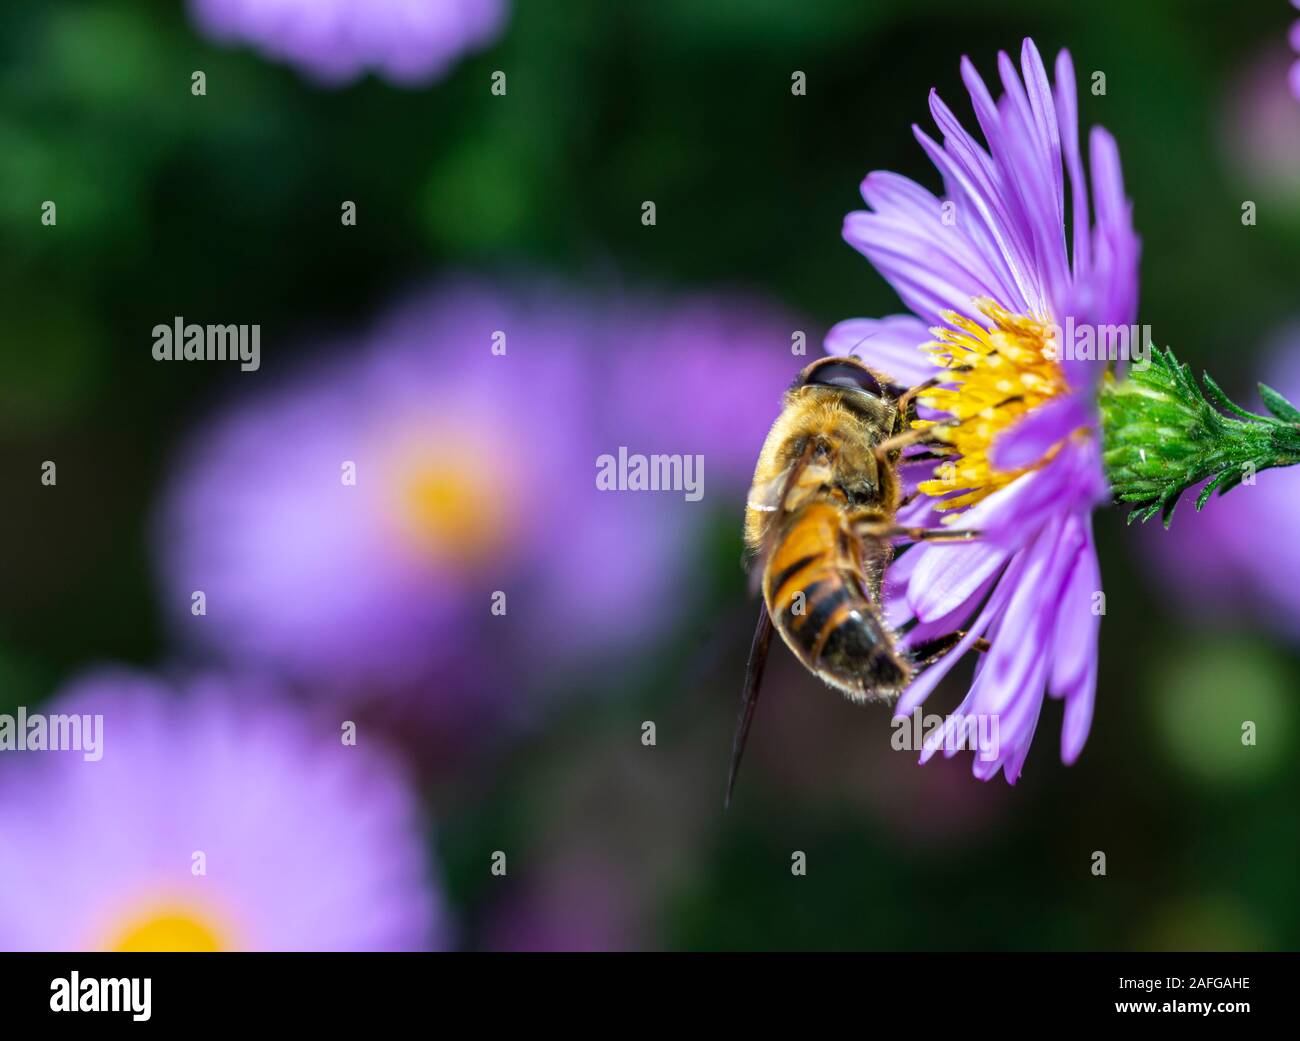 Essen Biene Blütenstaub von Blüte Frühling Blume und Biene bestäubt, violett blühende Blume Stockfoto